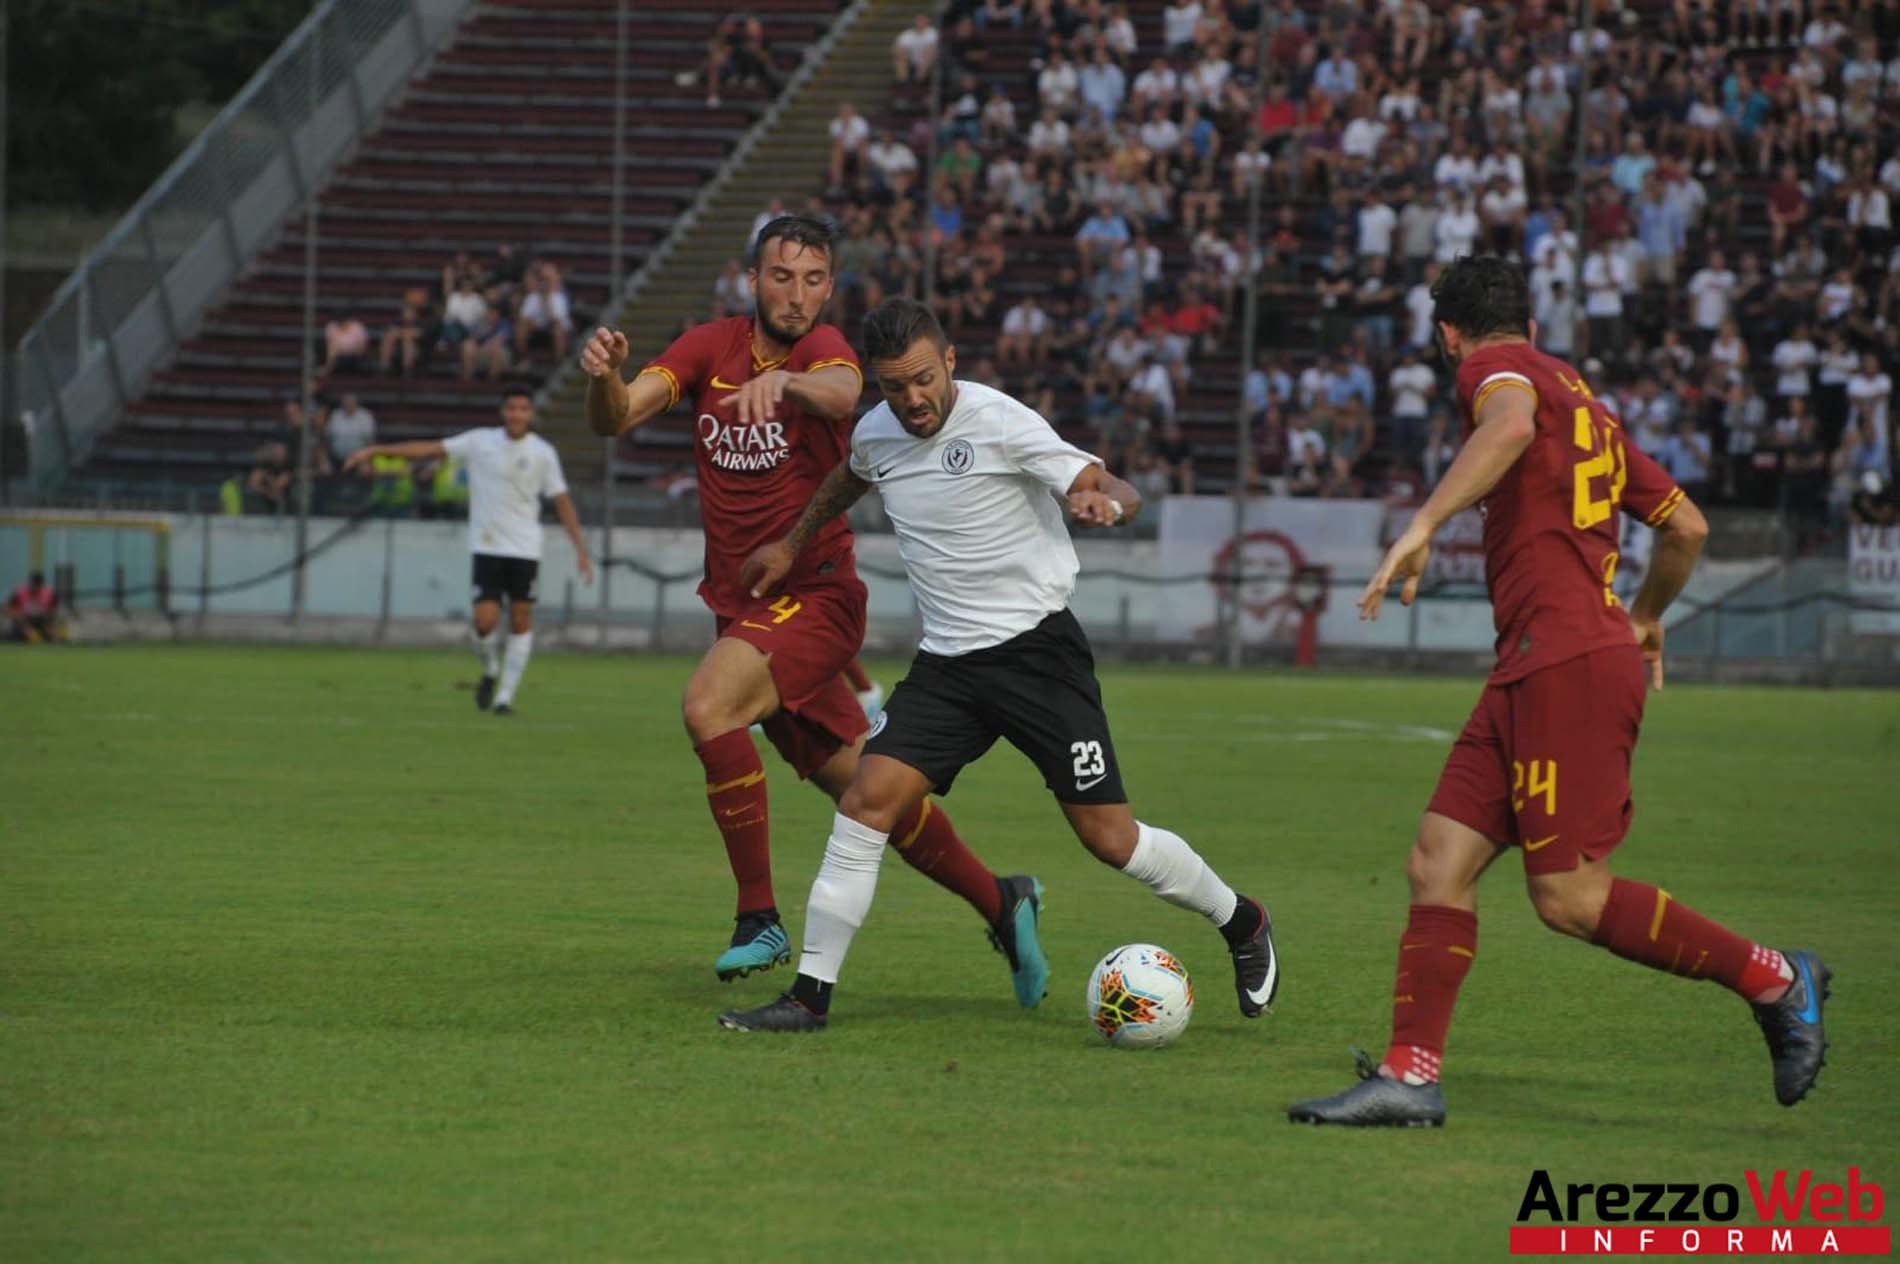 L’Arezzo perde contro la Roma 1-3